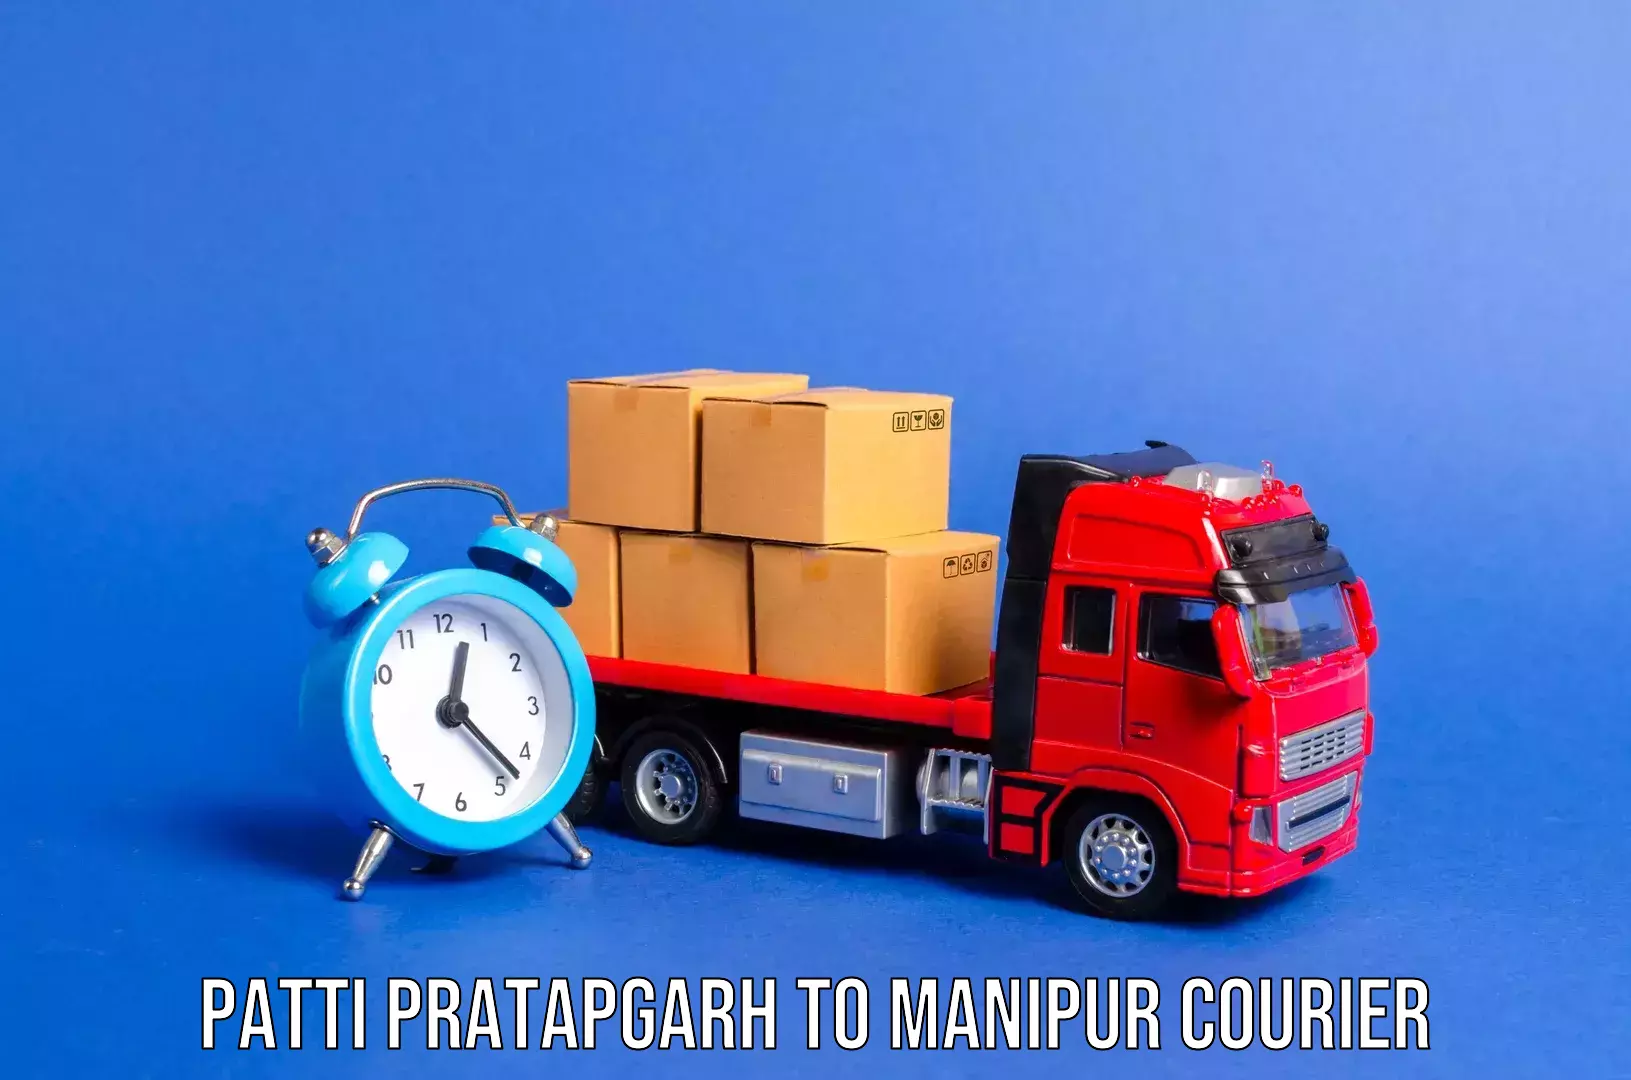 Global baggage shipping Patti Pratapgarh to Kanti